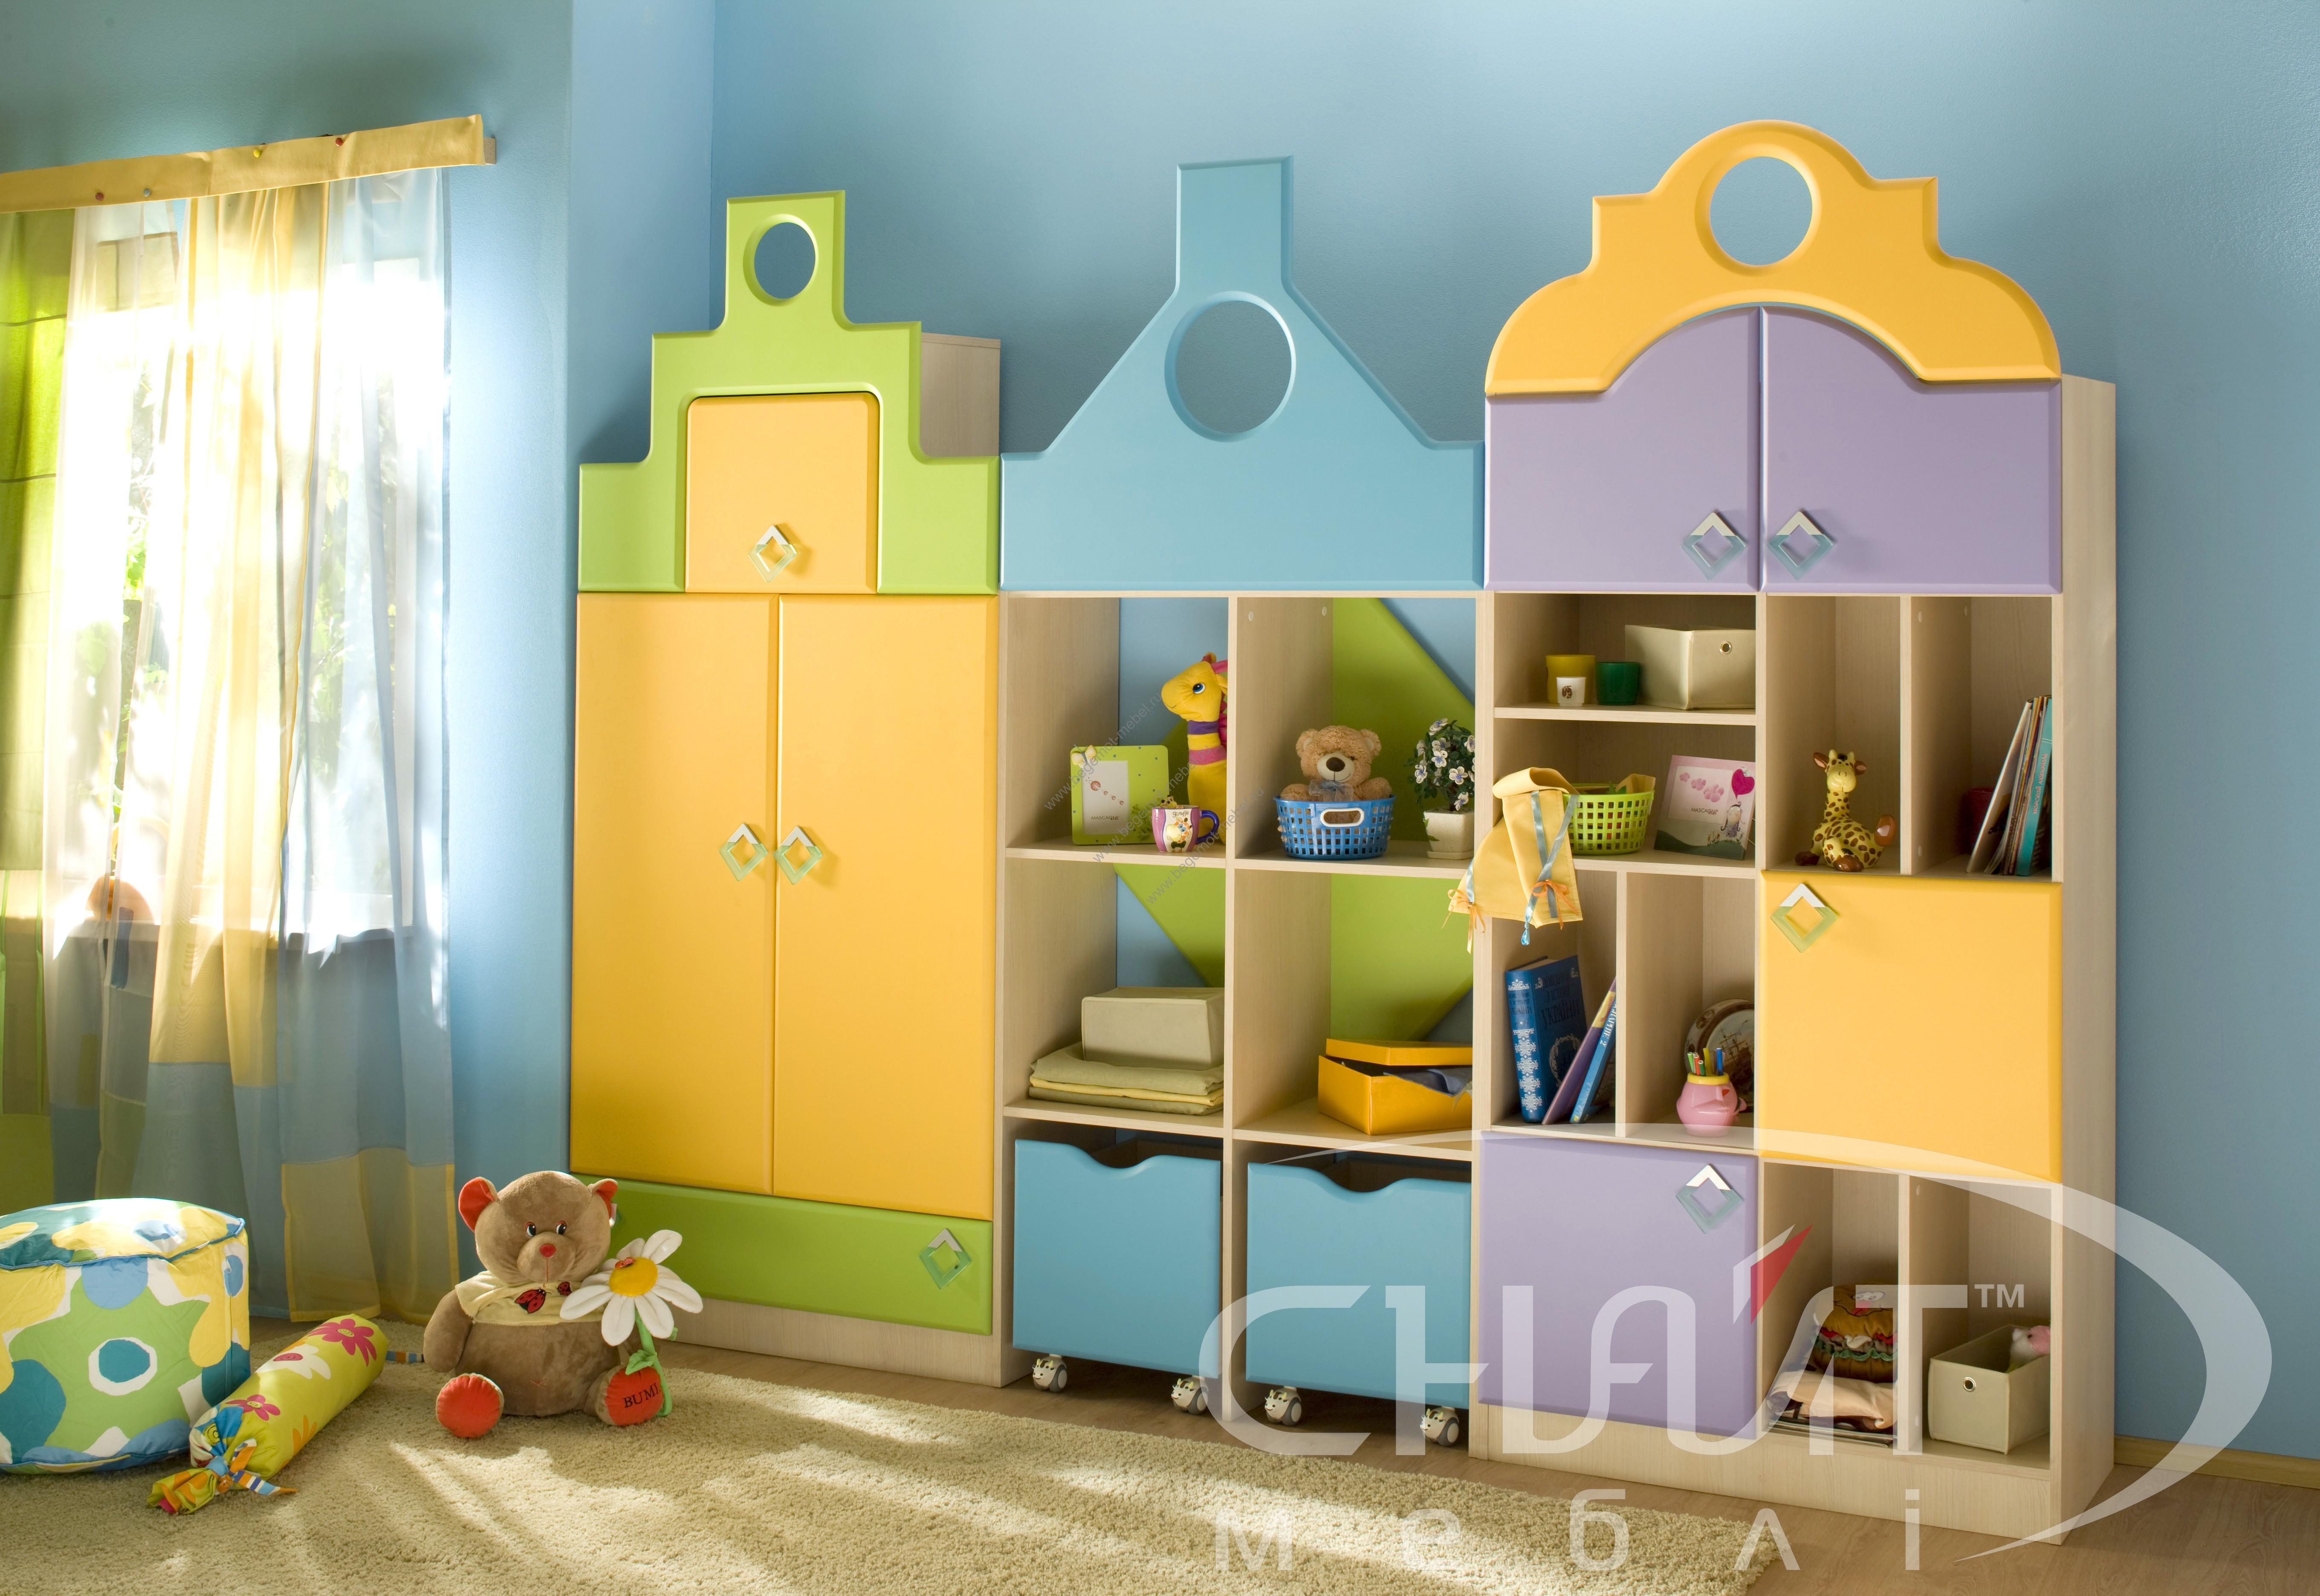 Сайт детской мебели для детских садов. Детская мебель Снайт. Шкаф для детской. Стенка для детского сада. Мебель для садика.